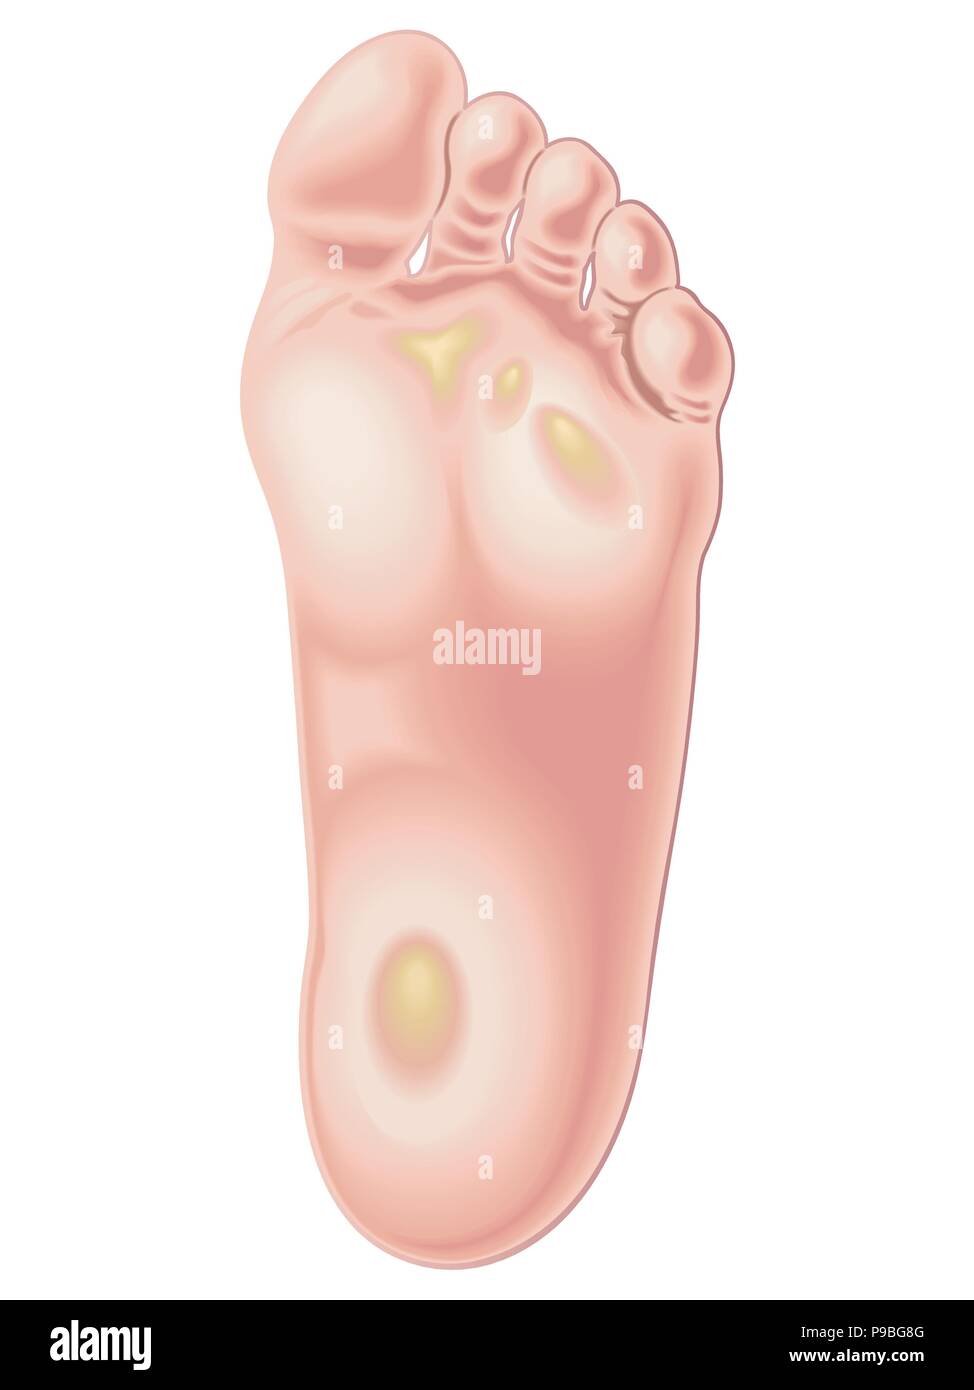 Vettore Illustrazione medica della posizione di calli sui piedi Illustrazione Vettoriale